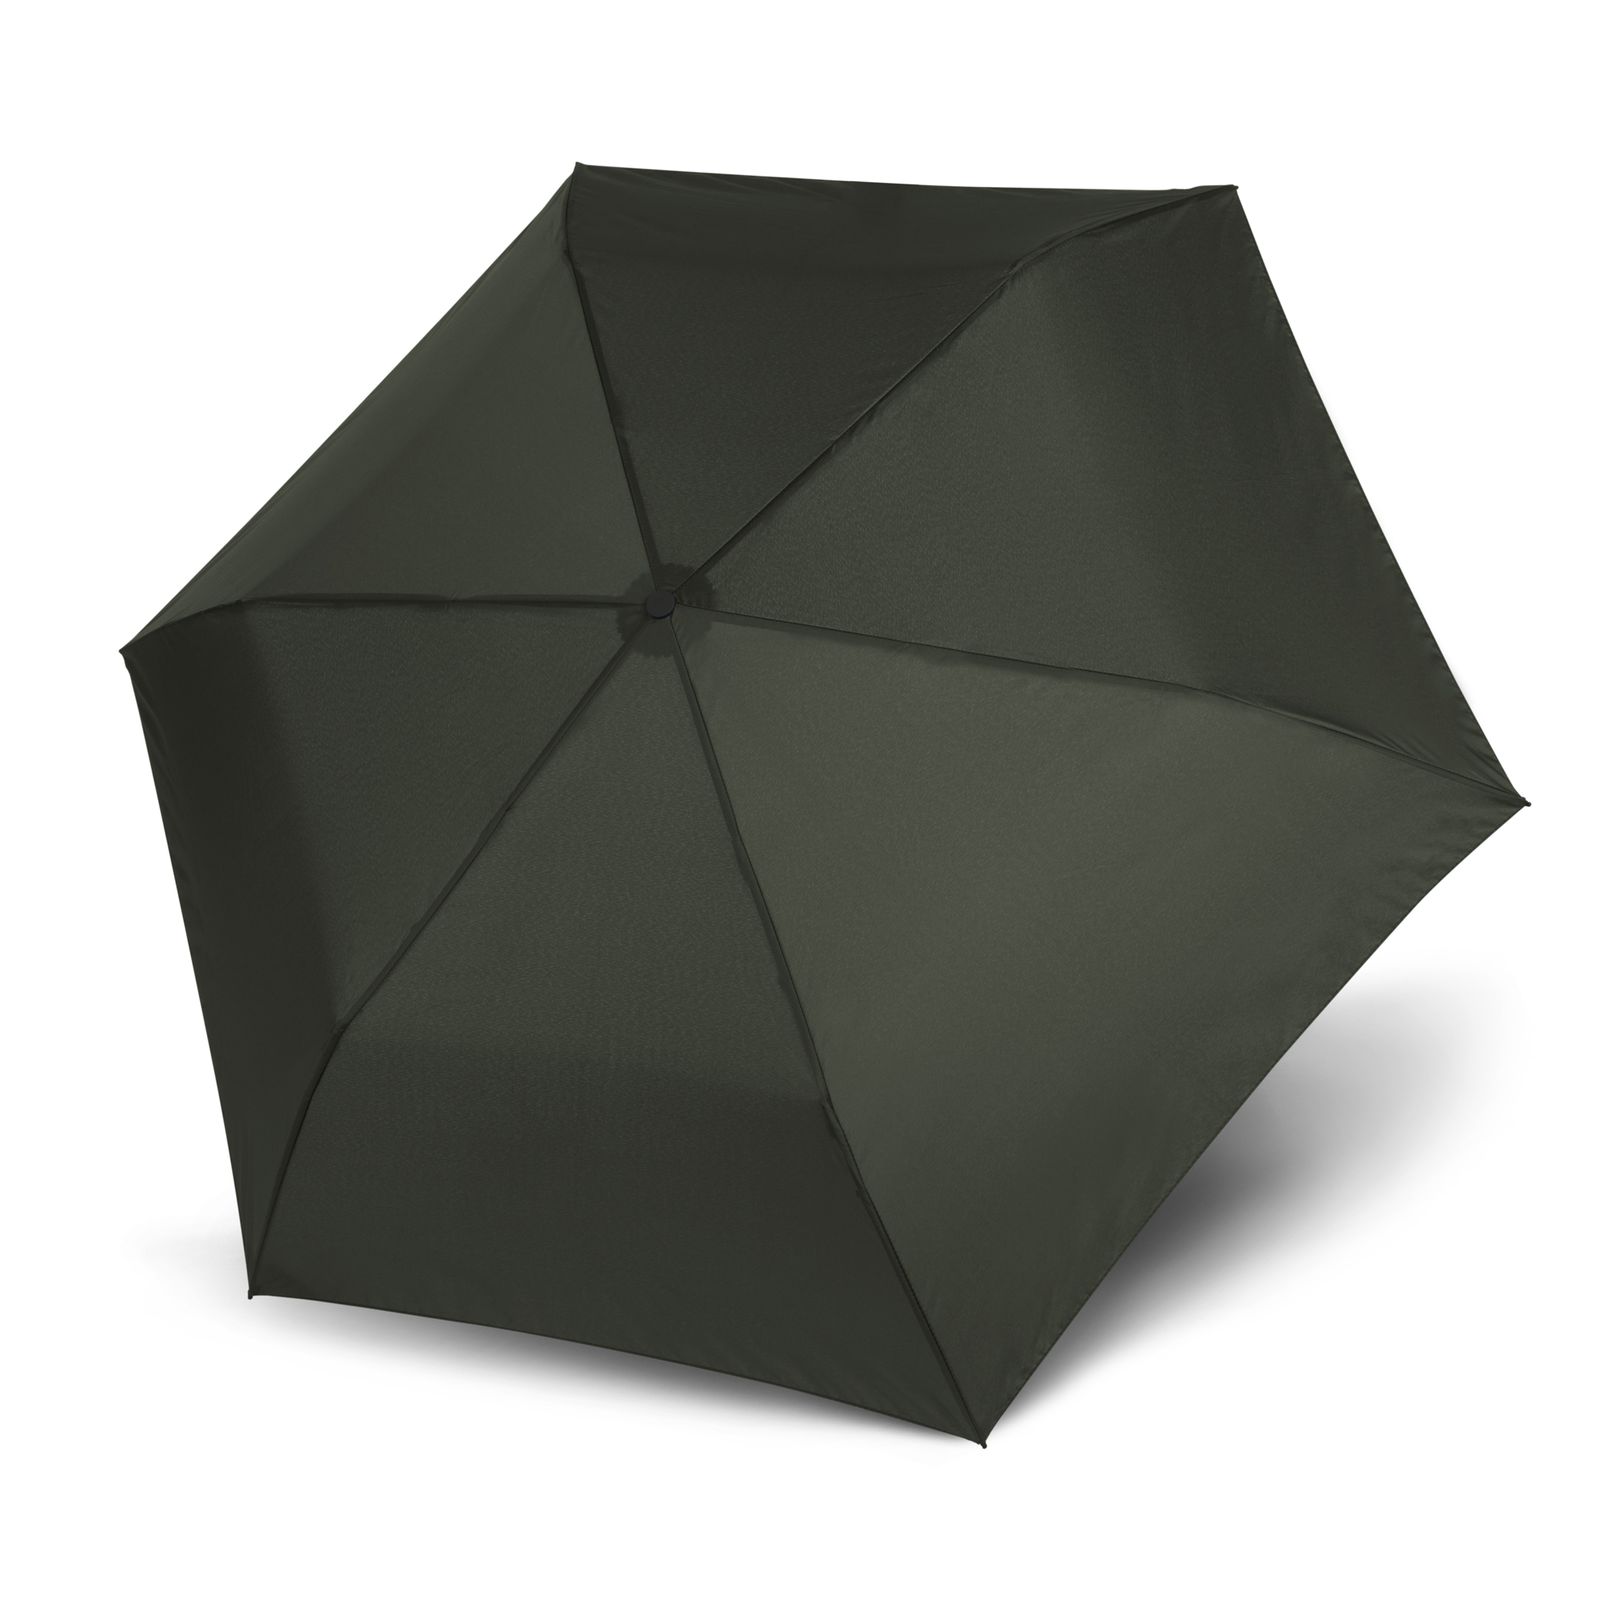 Doppler Umbrella Zero,99